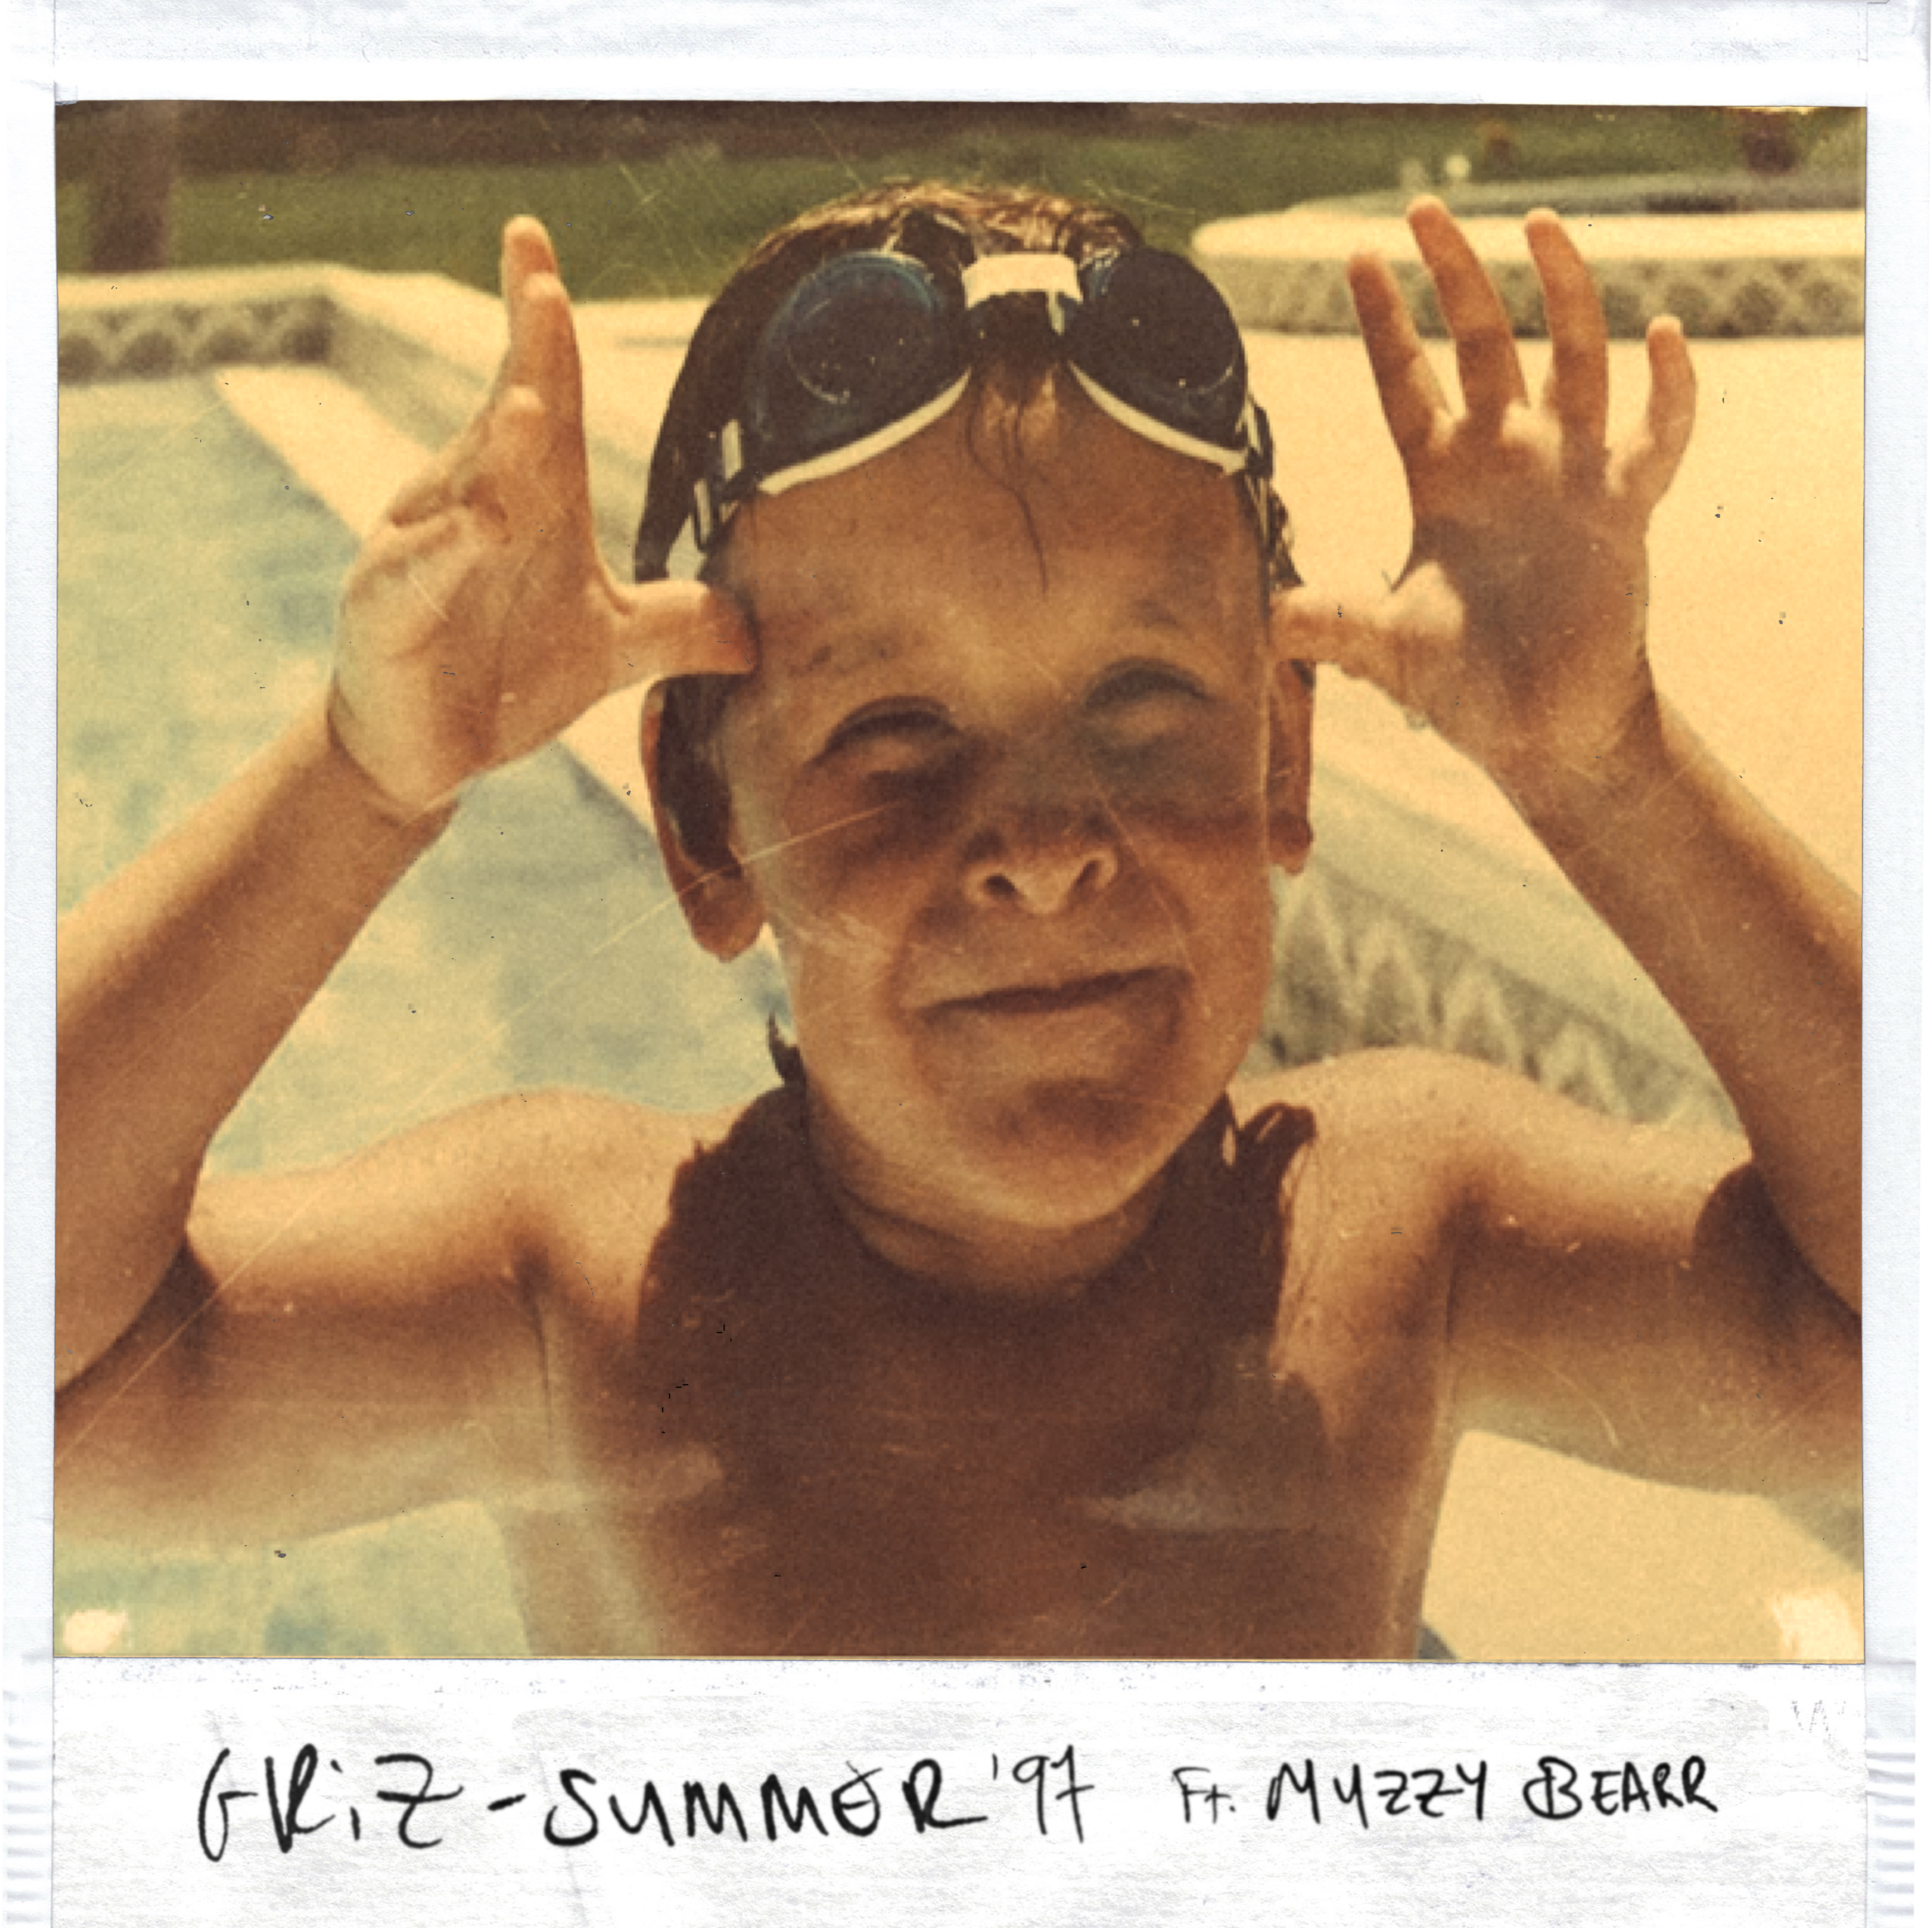 ڈاؤن لوڈ کریں Summer '97 ft. Muzzy Bearr